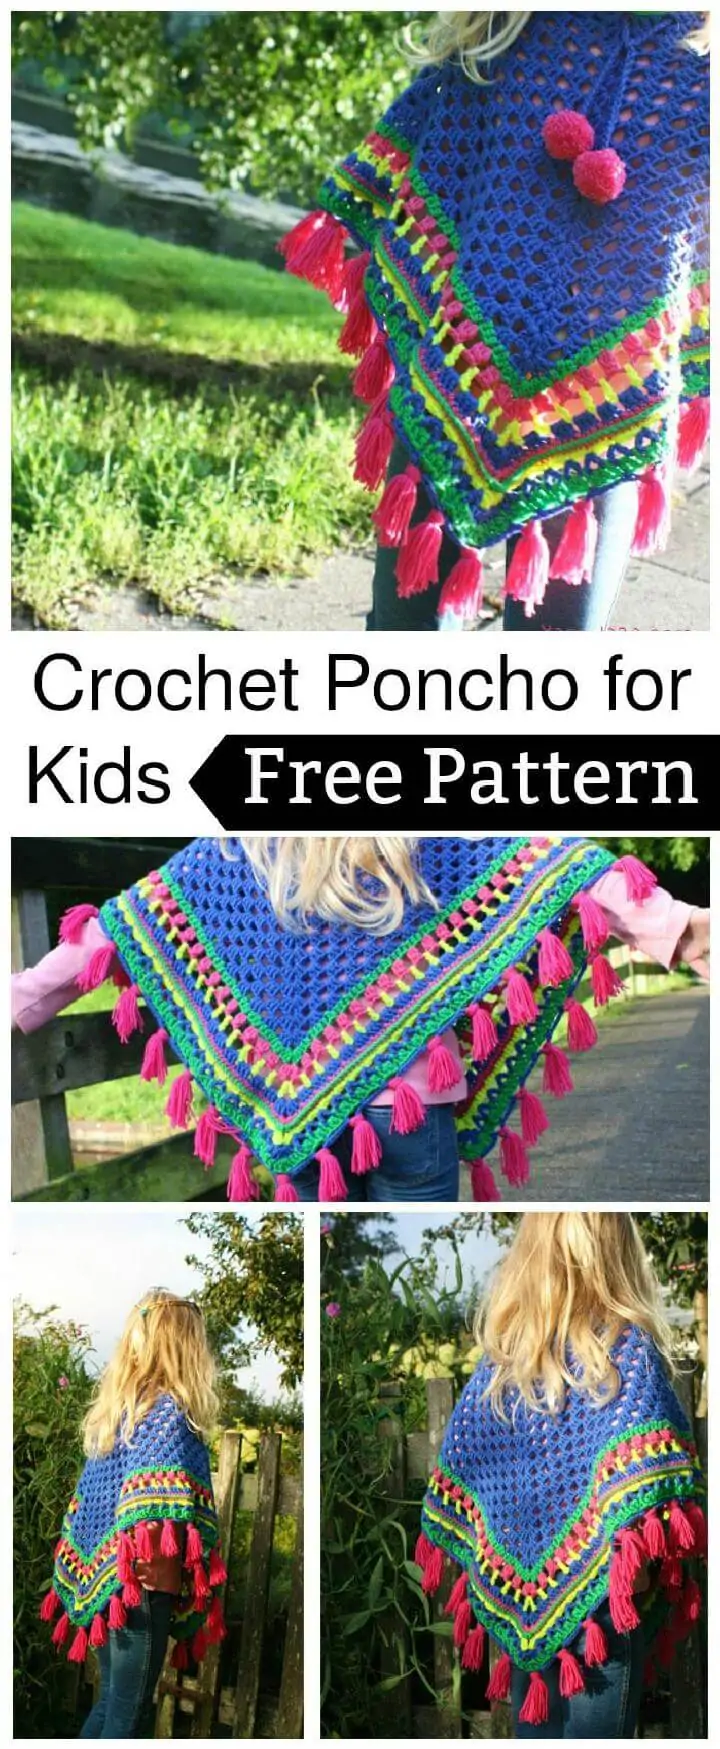 Poncho de crochet alegre para niños - Patrón gratuito